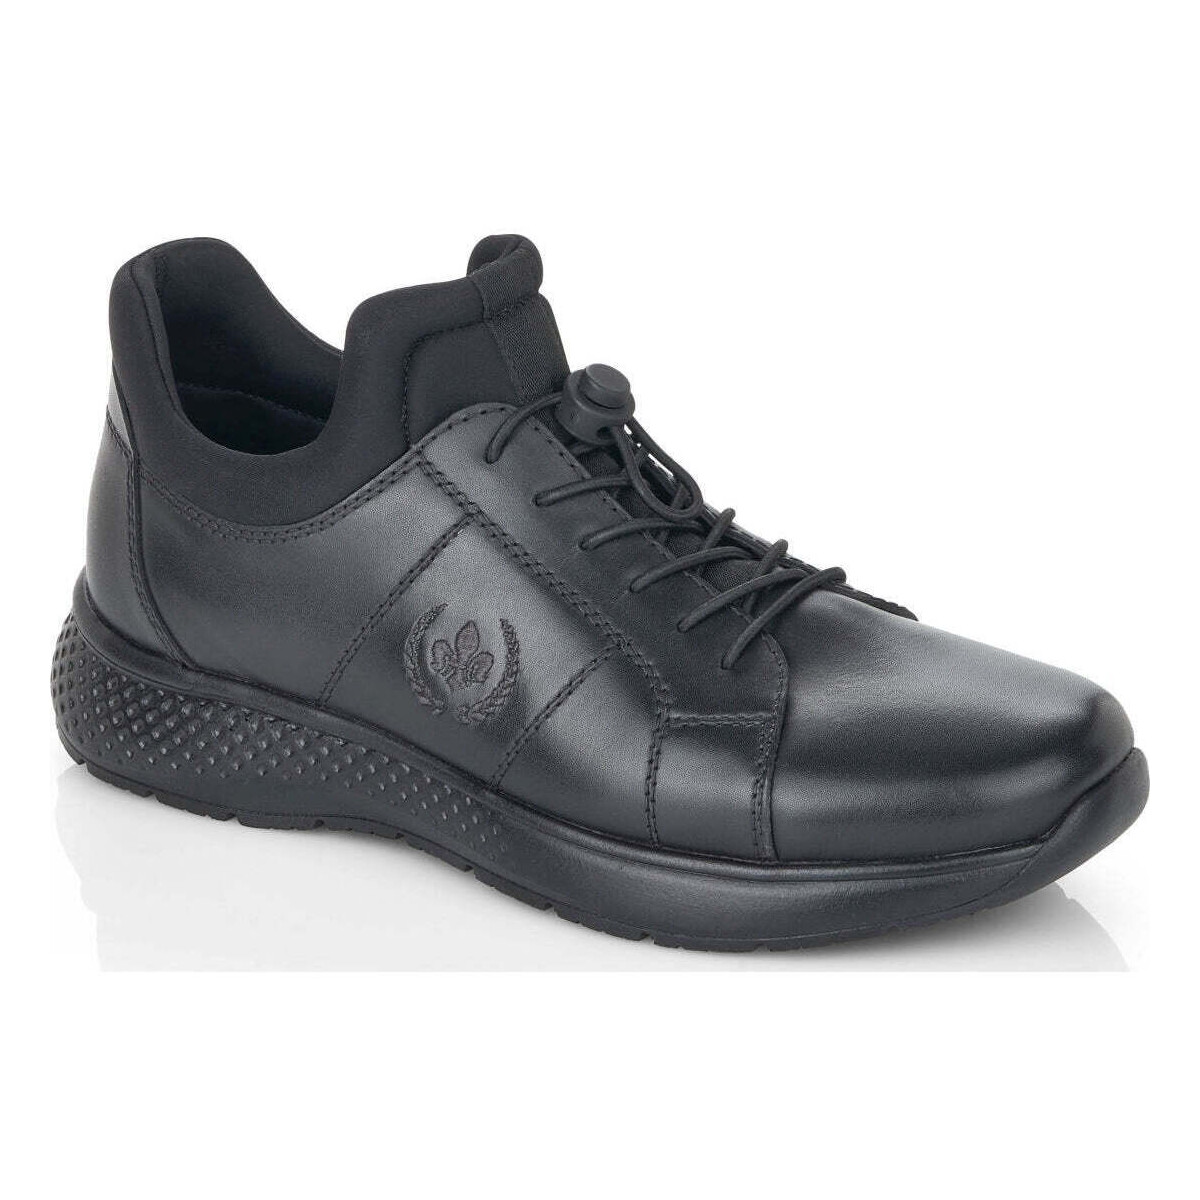 Chaussures Homme Baskets basses Rieker black casual closed sport shoe Noir